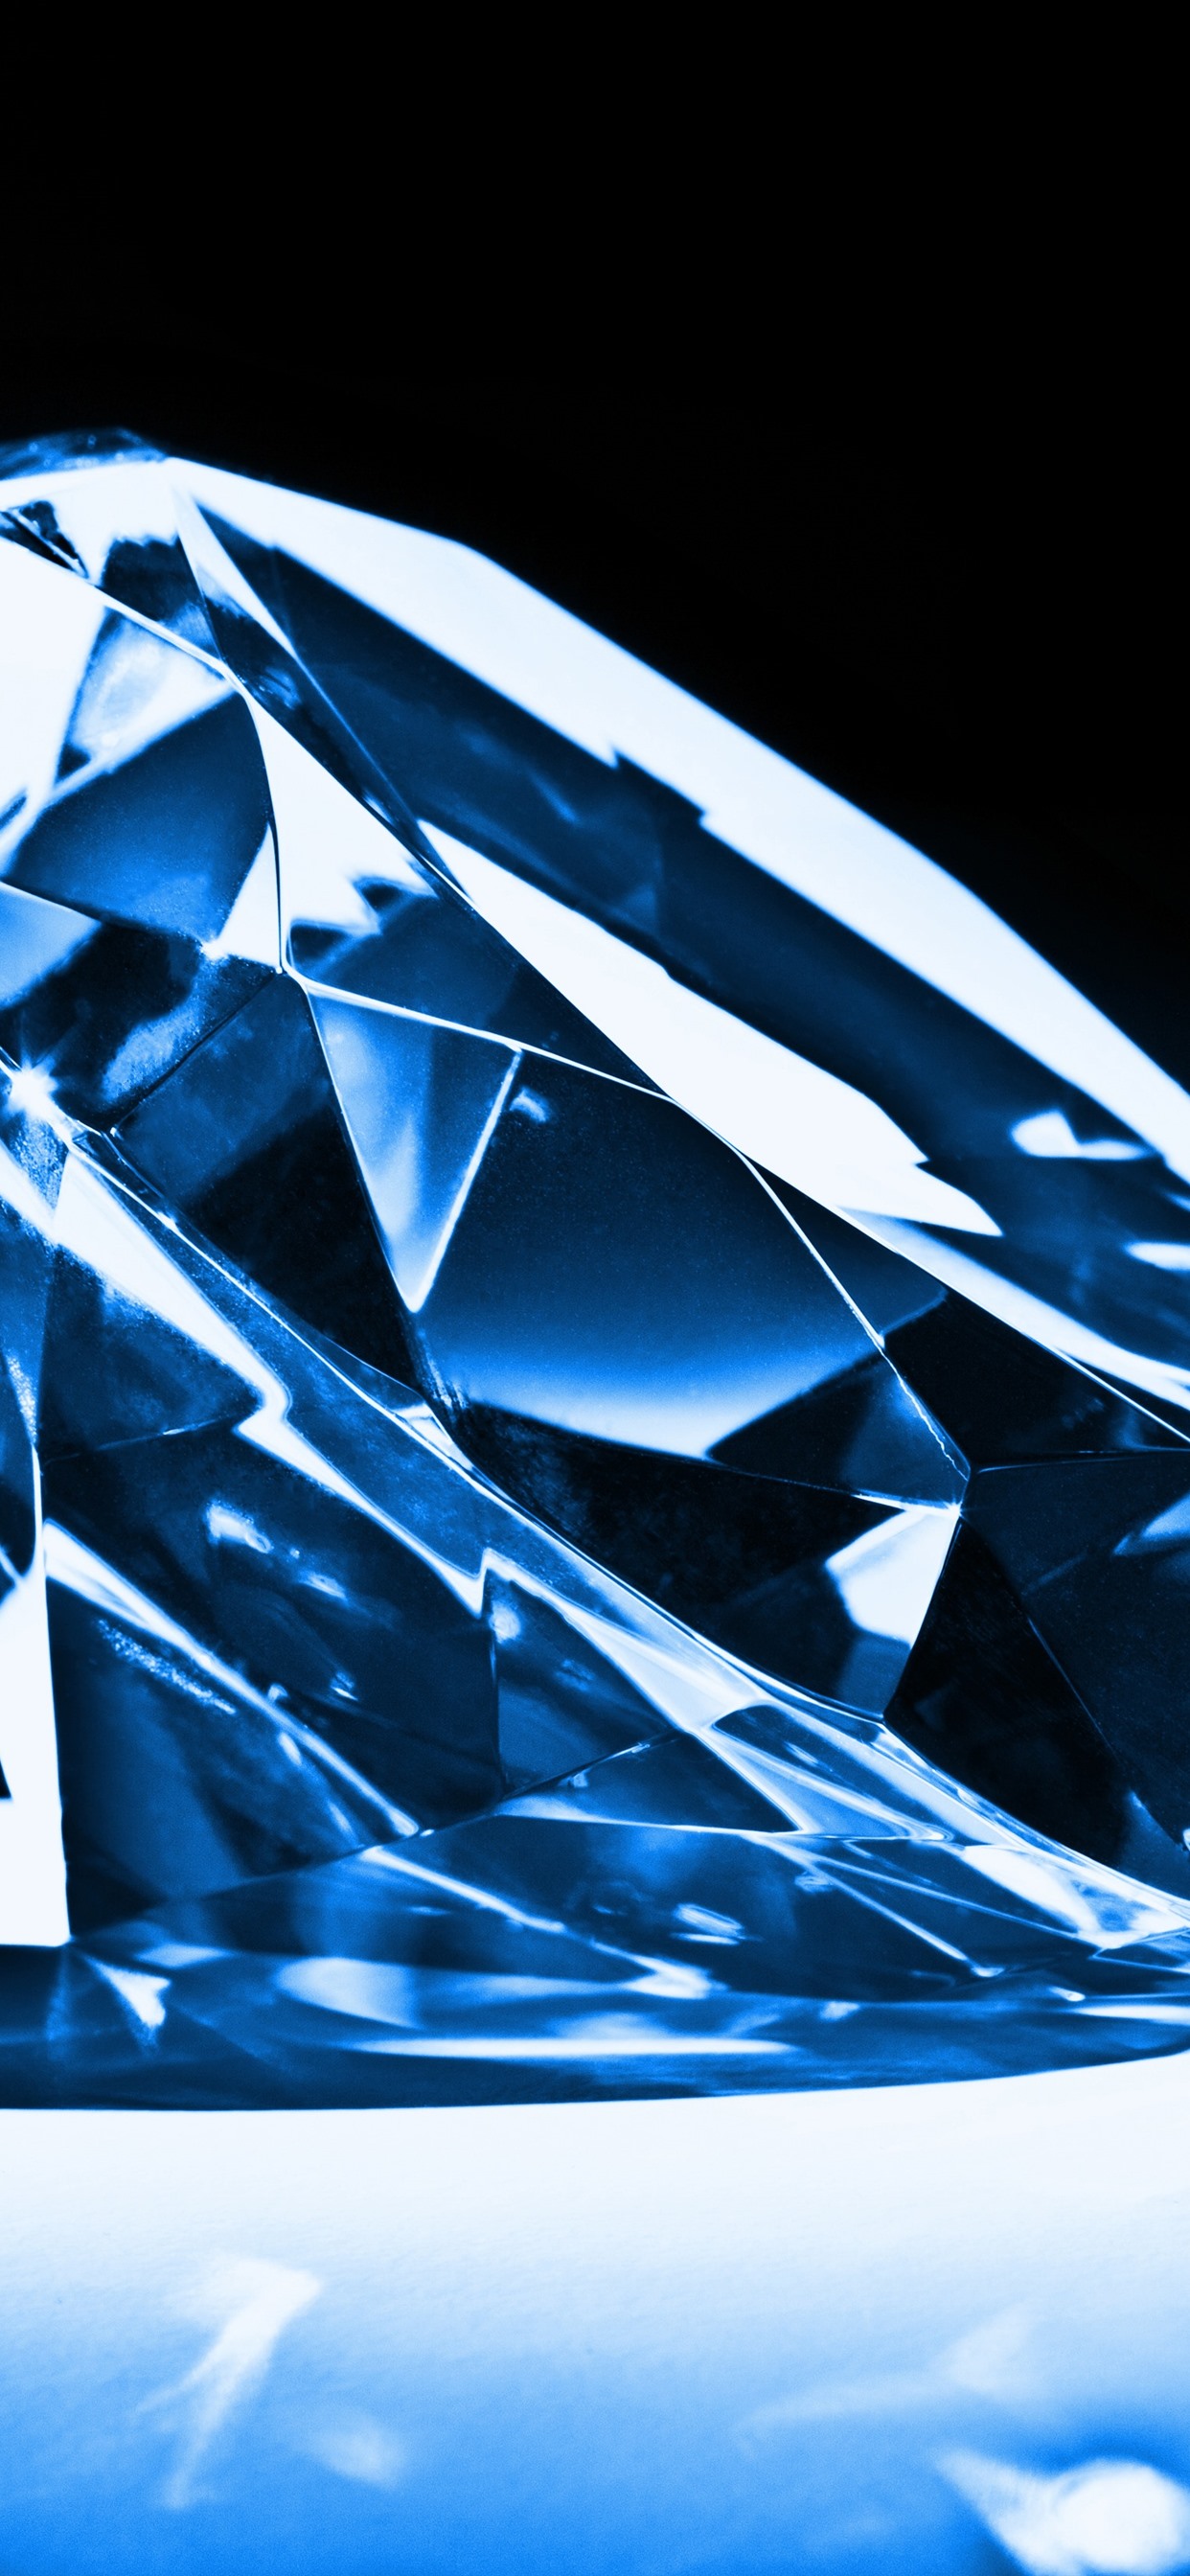 다이아몬드 벽지,푸른,짙은 청록색,다이아몬드,강청색,무늬